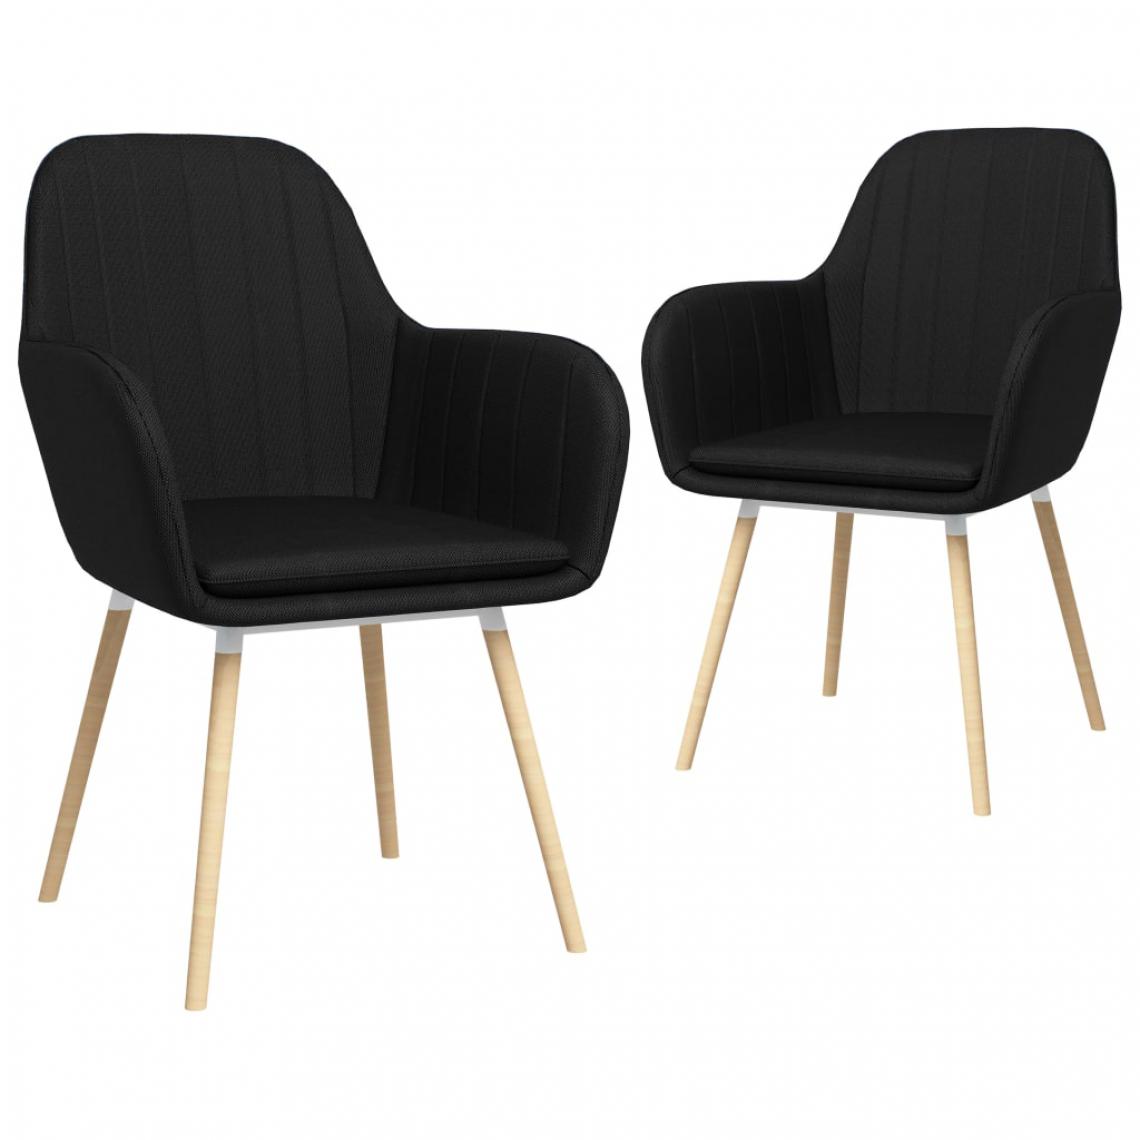 Icaverne - Stylé Fauteuils et chaises selection Mascate Chaises de salle à manger avec accoudoirs 2 pcs Noir Tissu - Chaises